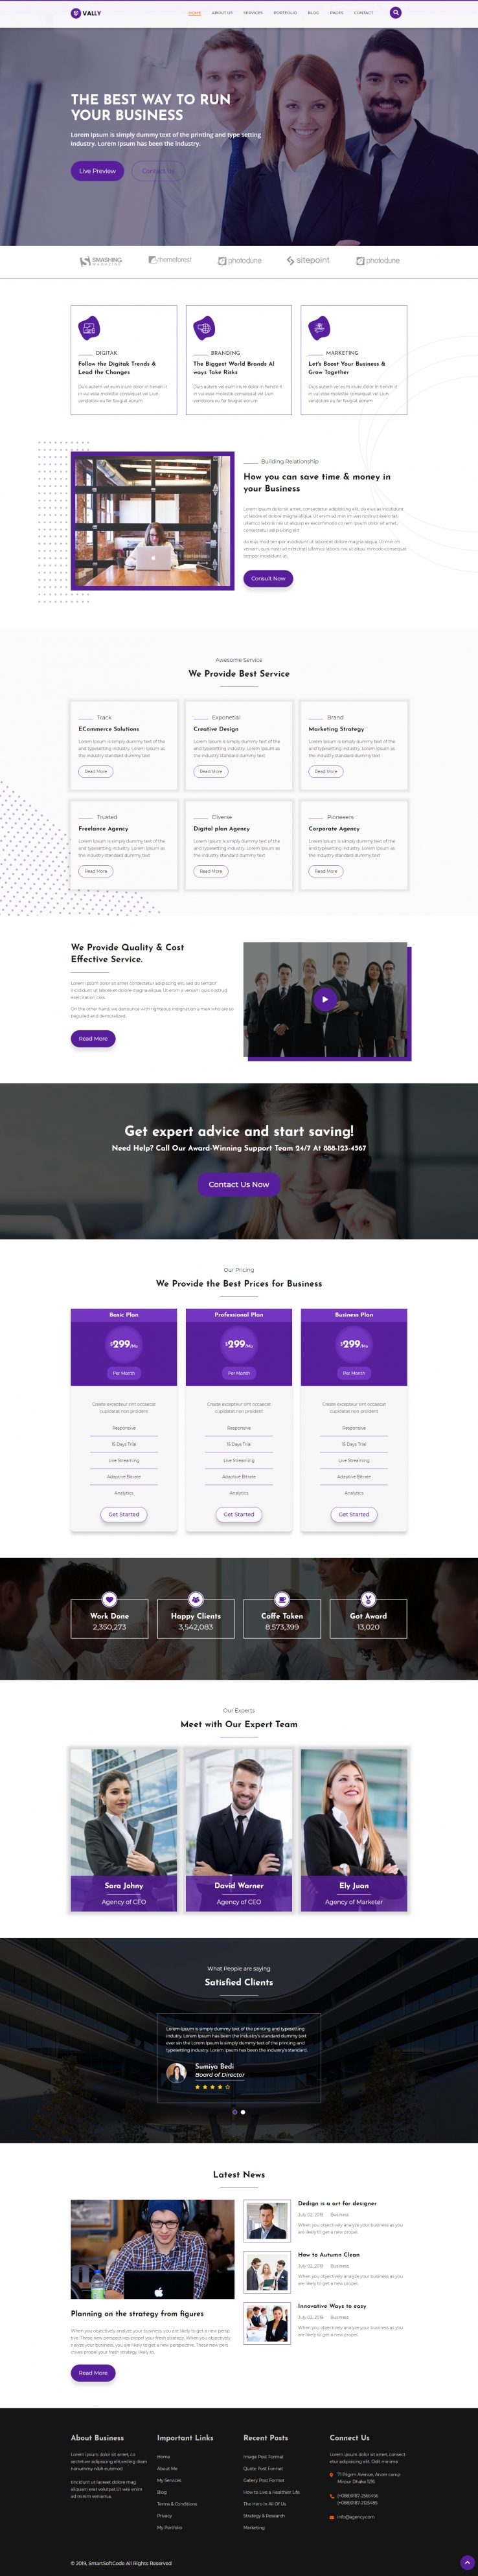 紫色宽屏形式html5企业商务代理网站模板代码下载